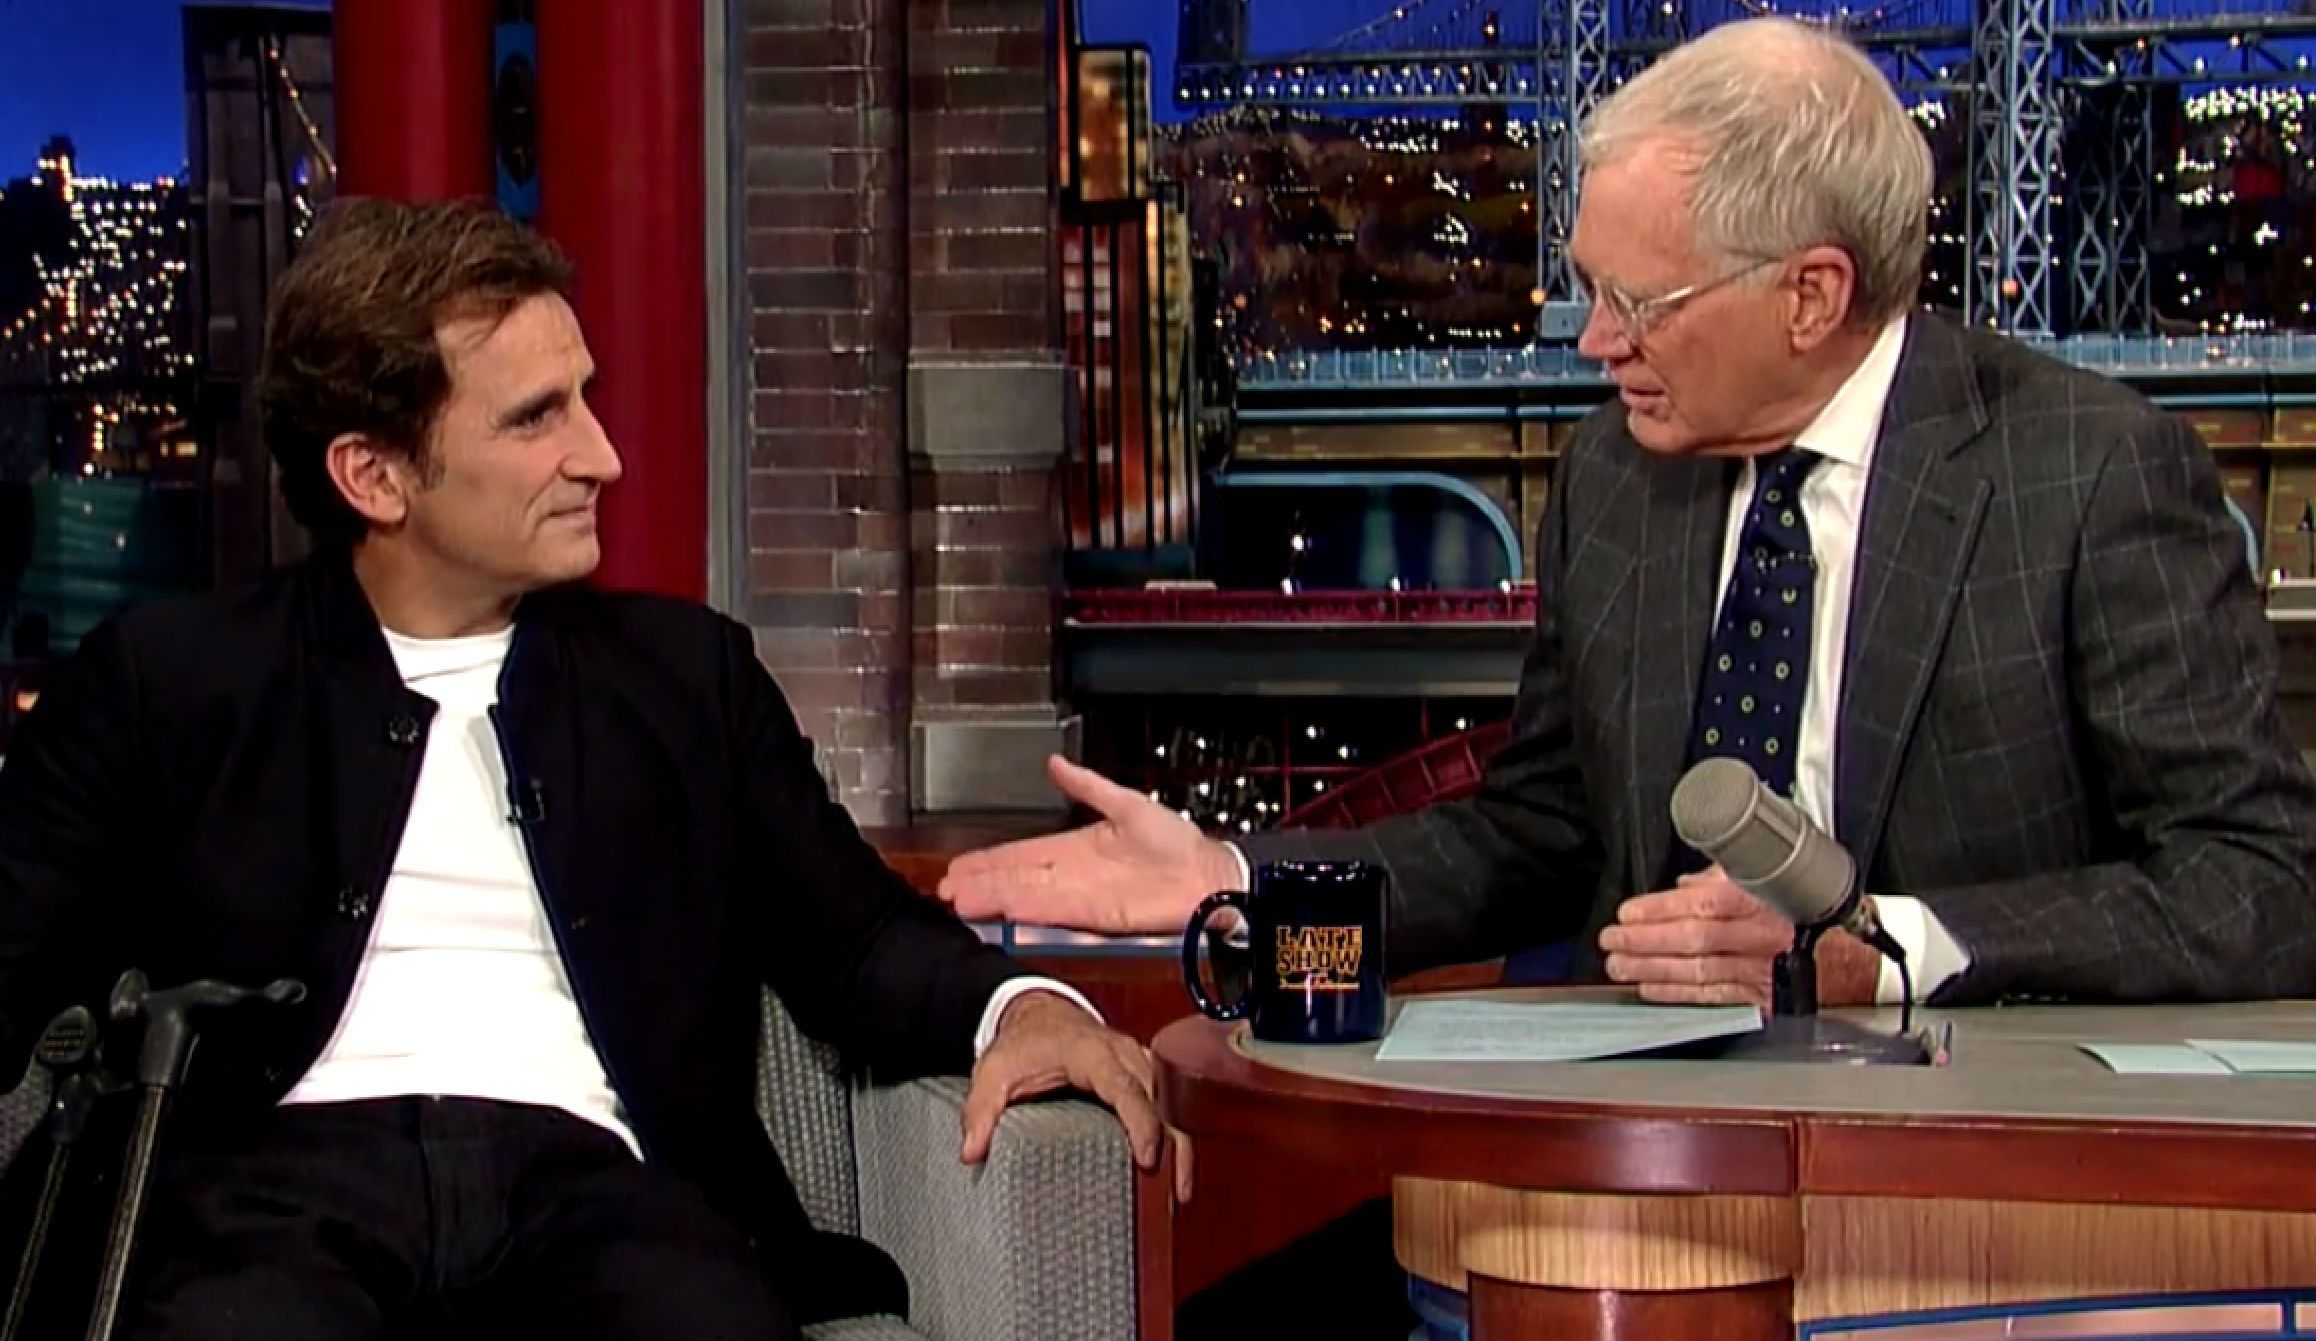 Alex Zanardi al David Letterman Show: ‘La curiosità è l’unica cosa di cui abbiamo bisogno’